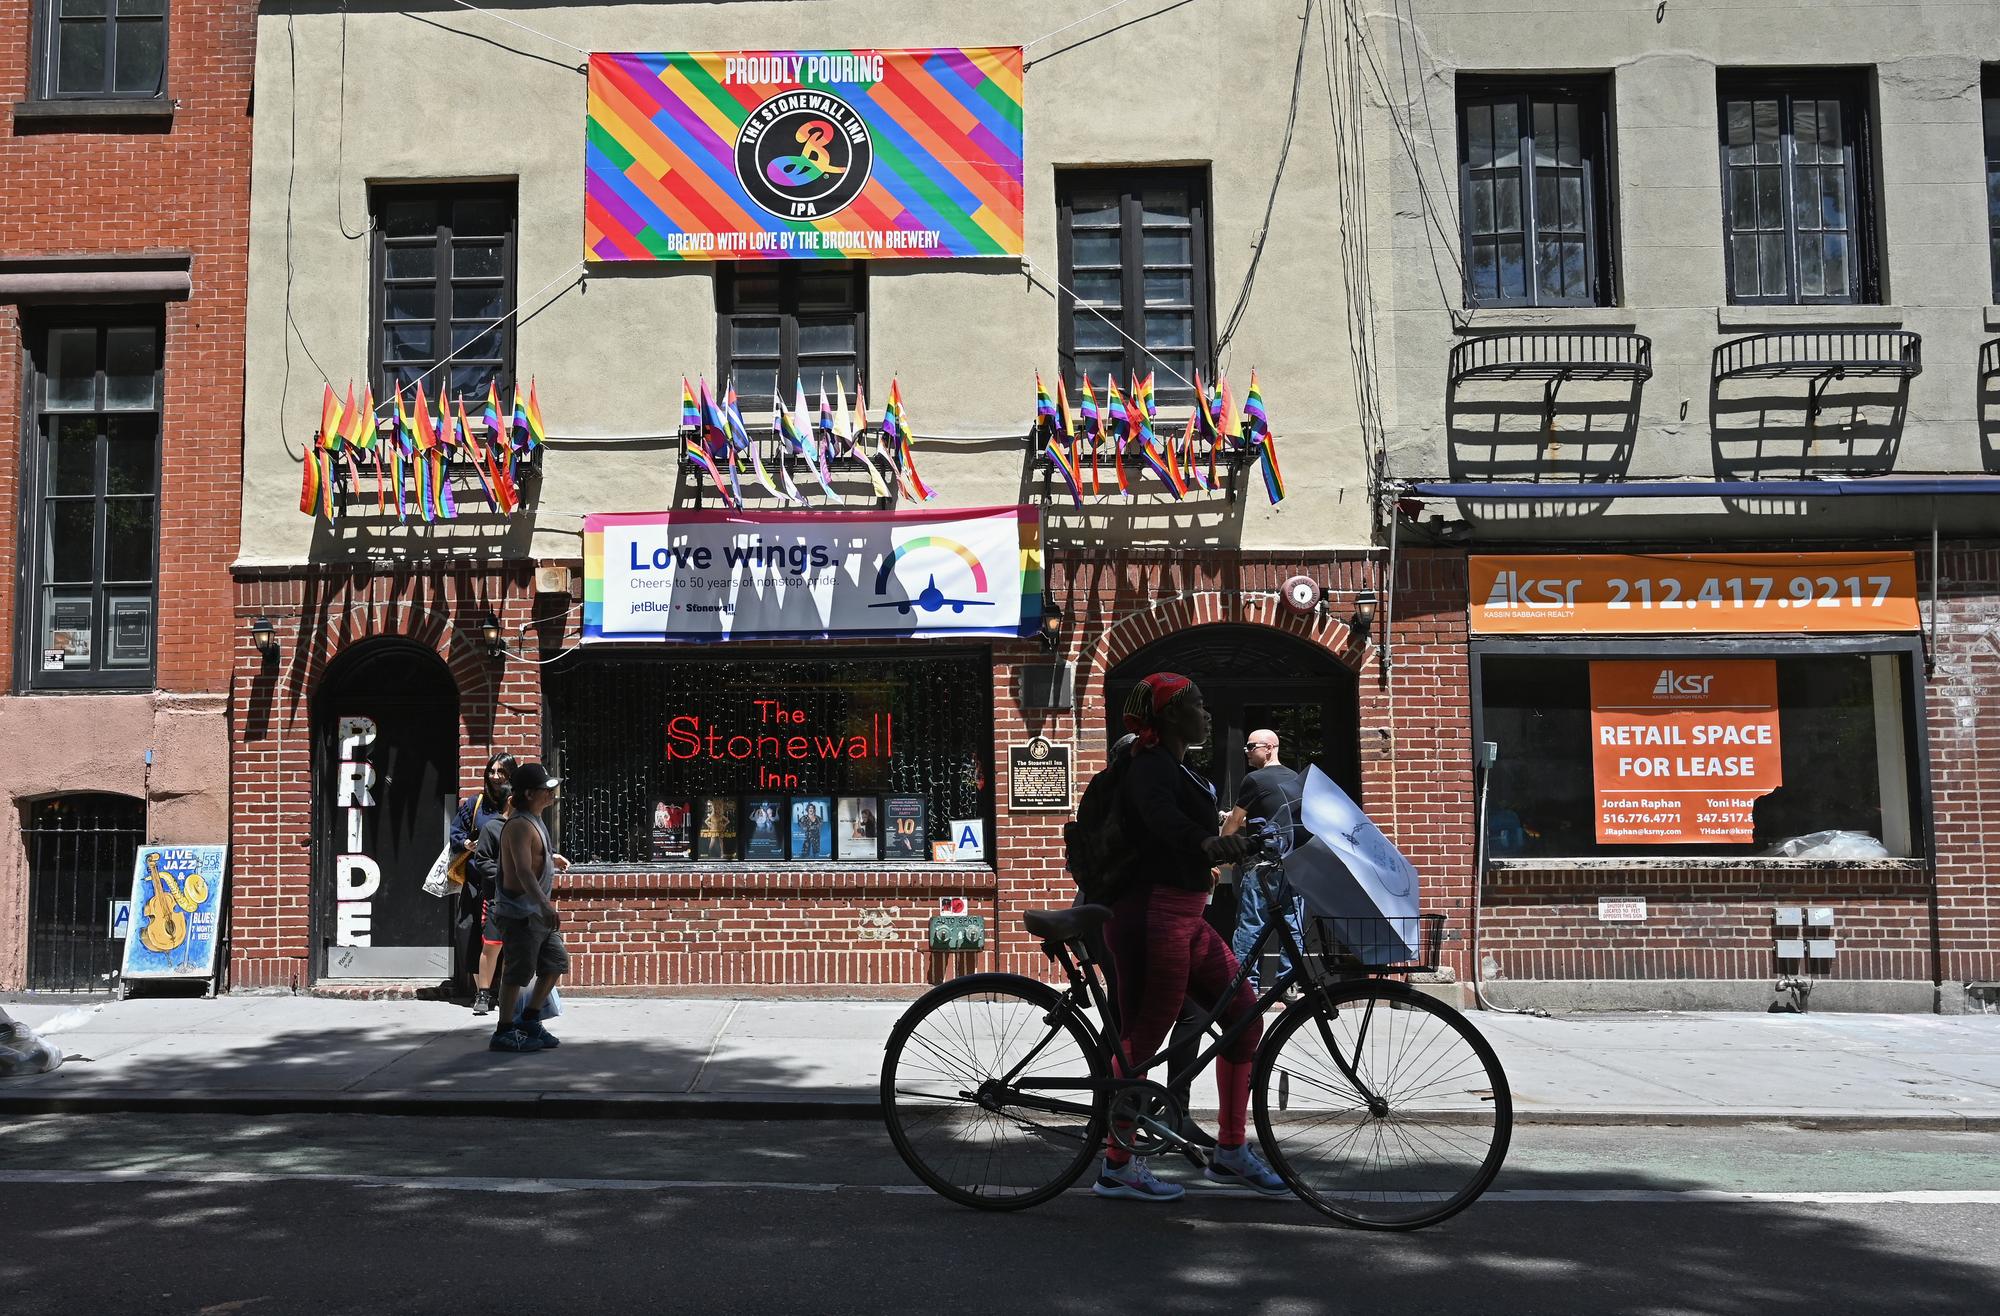 Des touristes, des enterrements de vie de célibataire, des drapeaux arcs-en-ciel, le Stonewall Inn figure désormais dans tous les guides touristiques. [AFP - Angela Weiss]